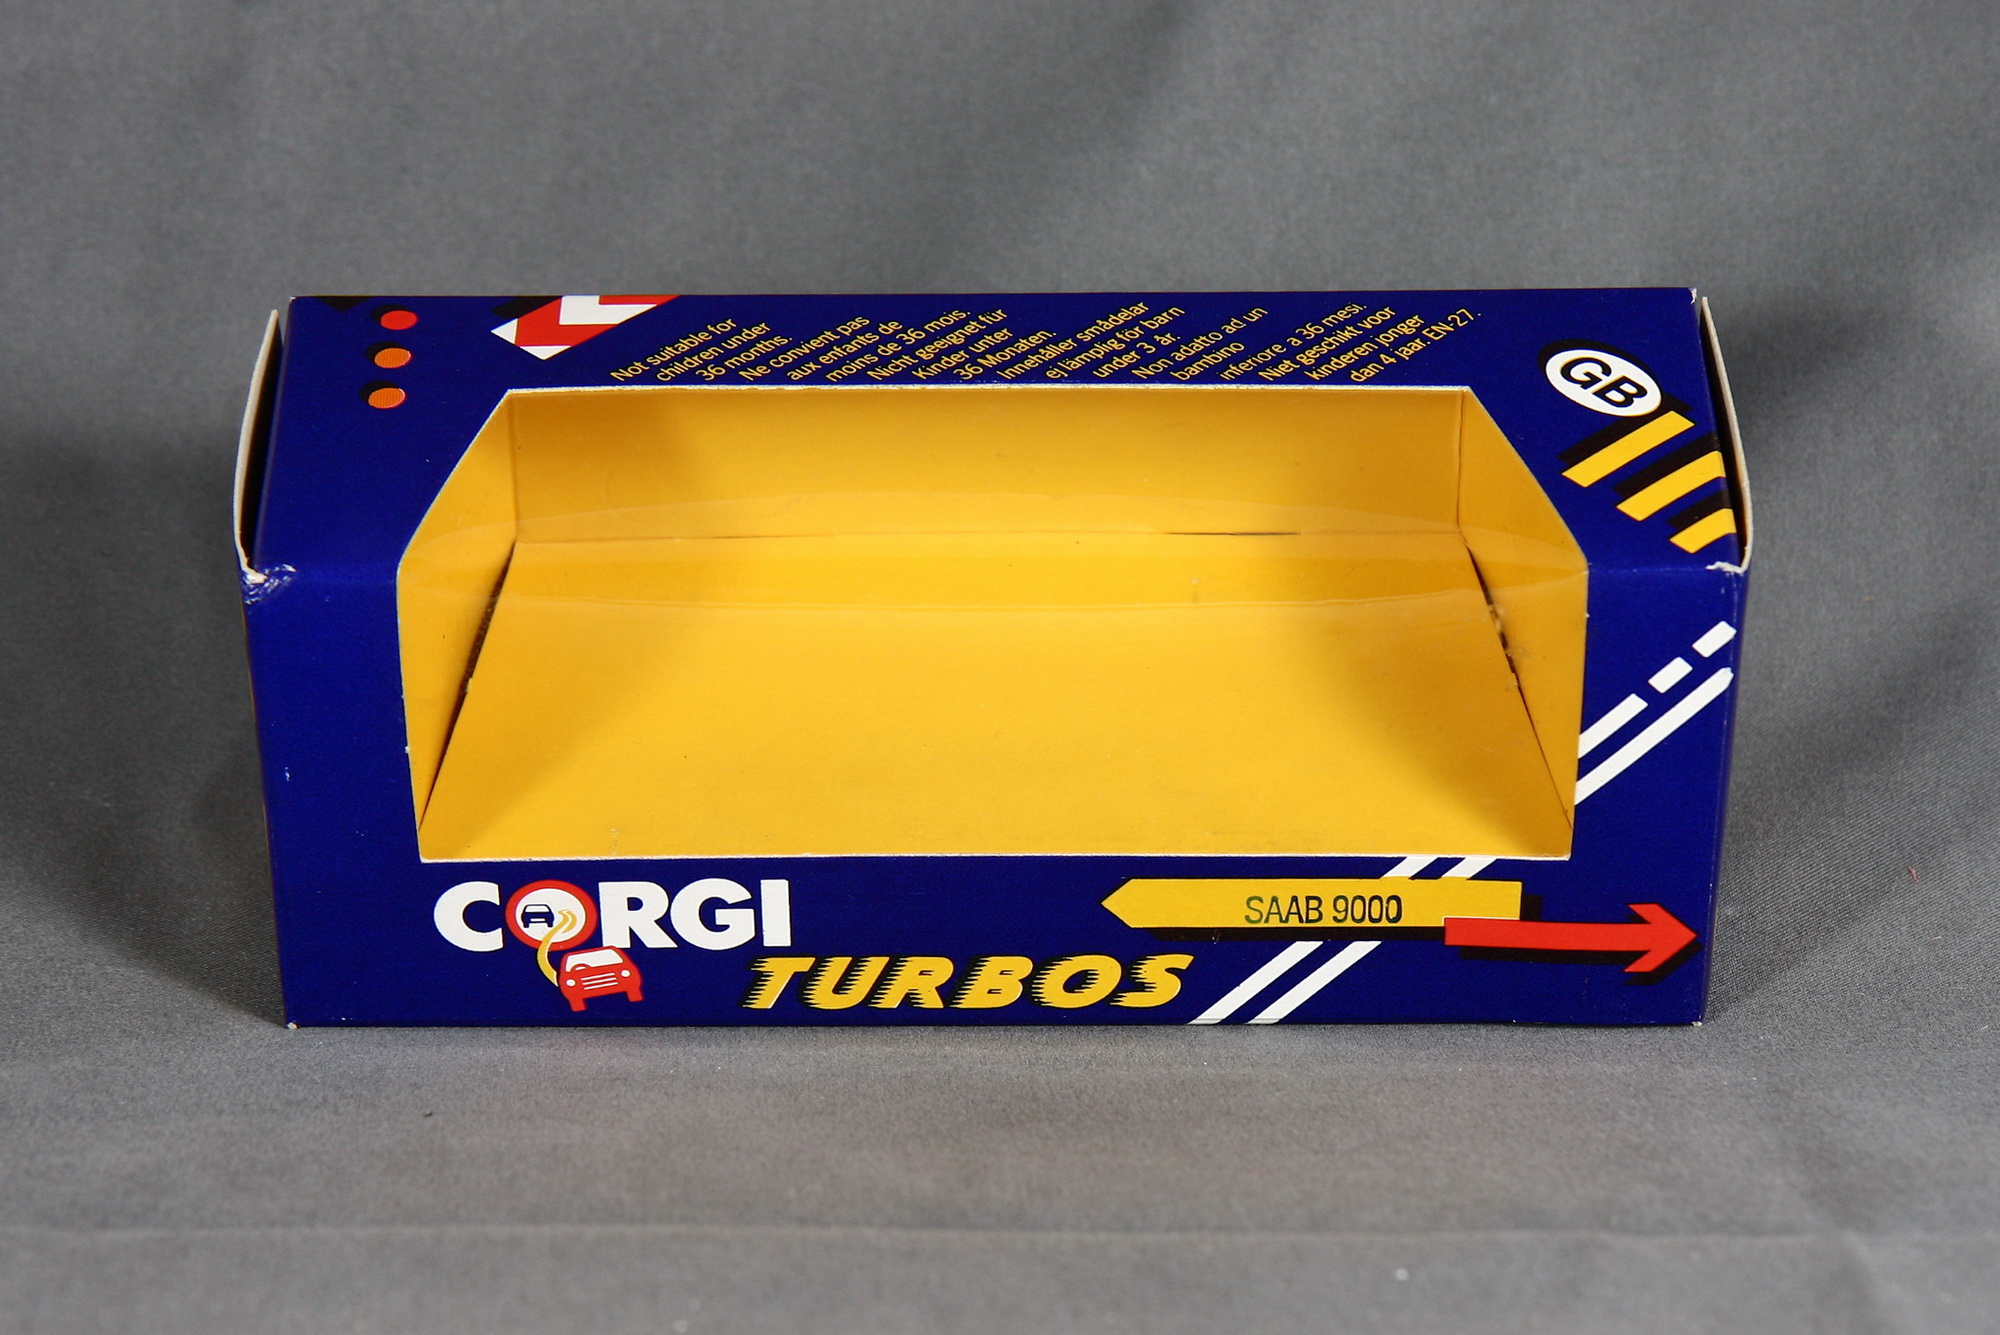 9000 - 1985 CC Turbo 16 Bild 26